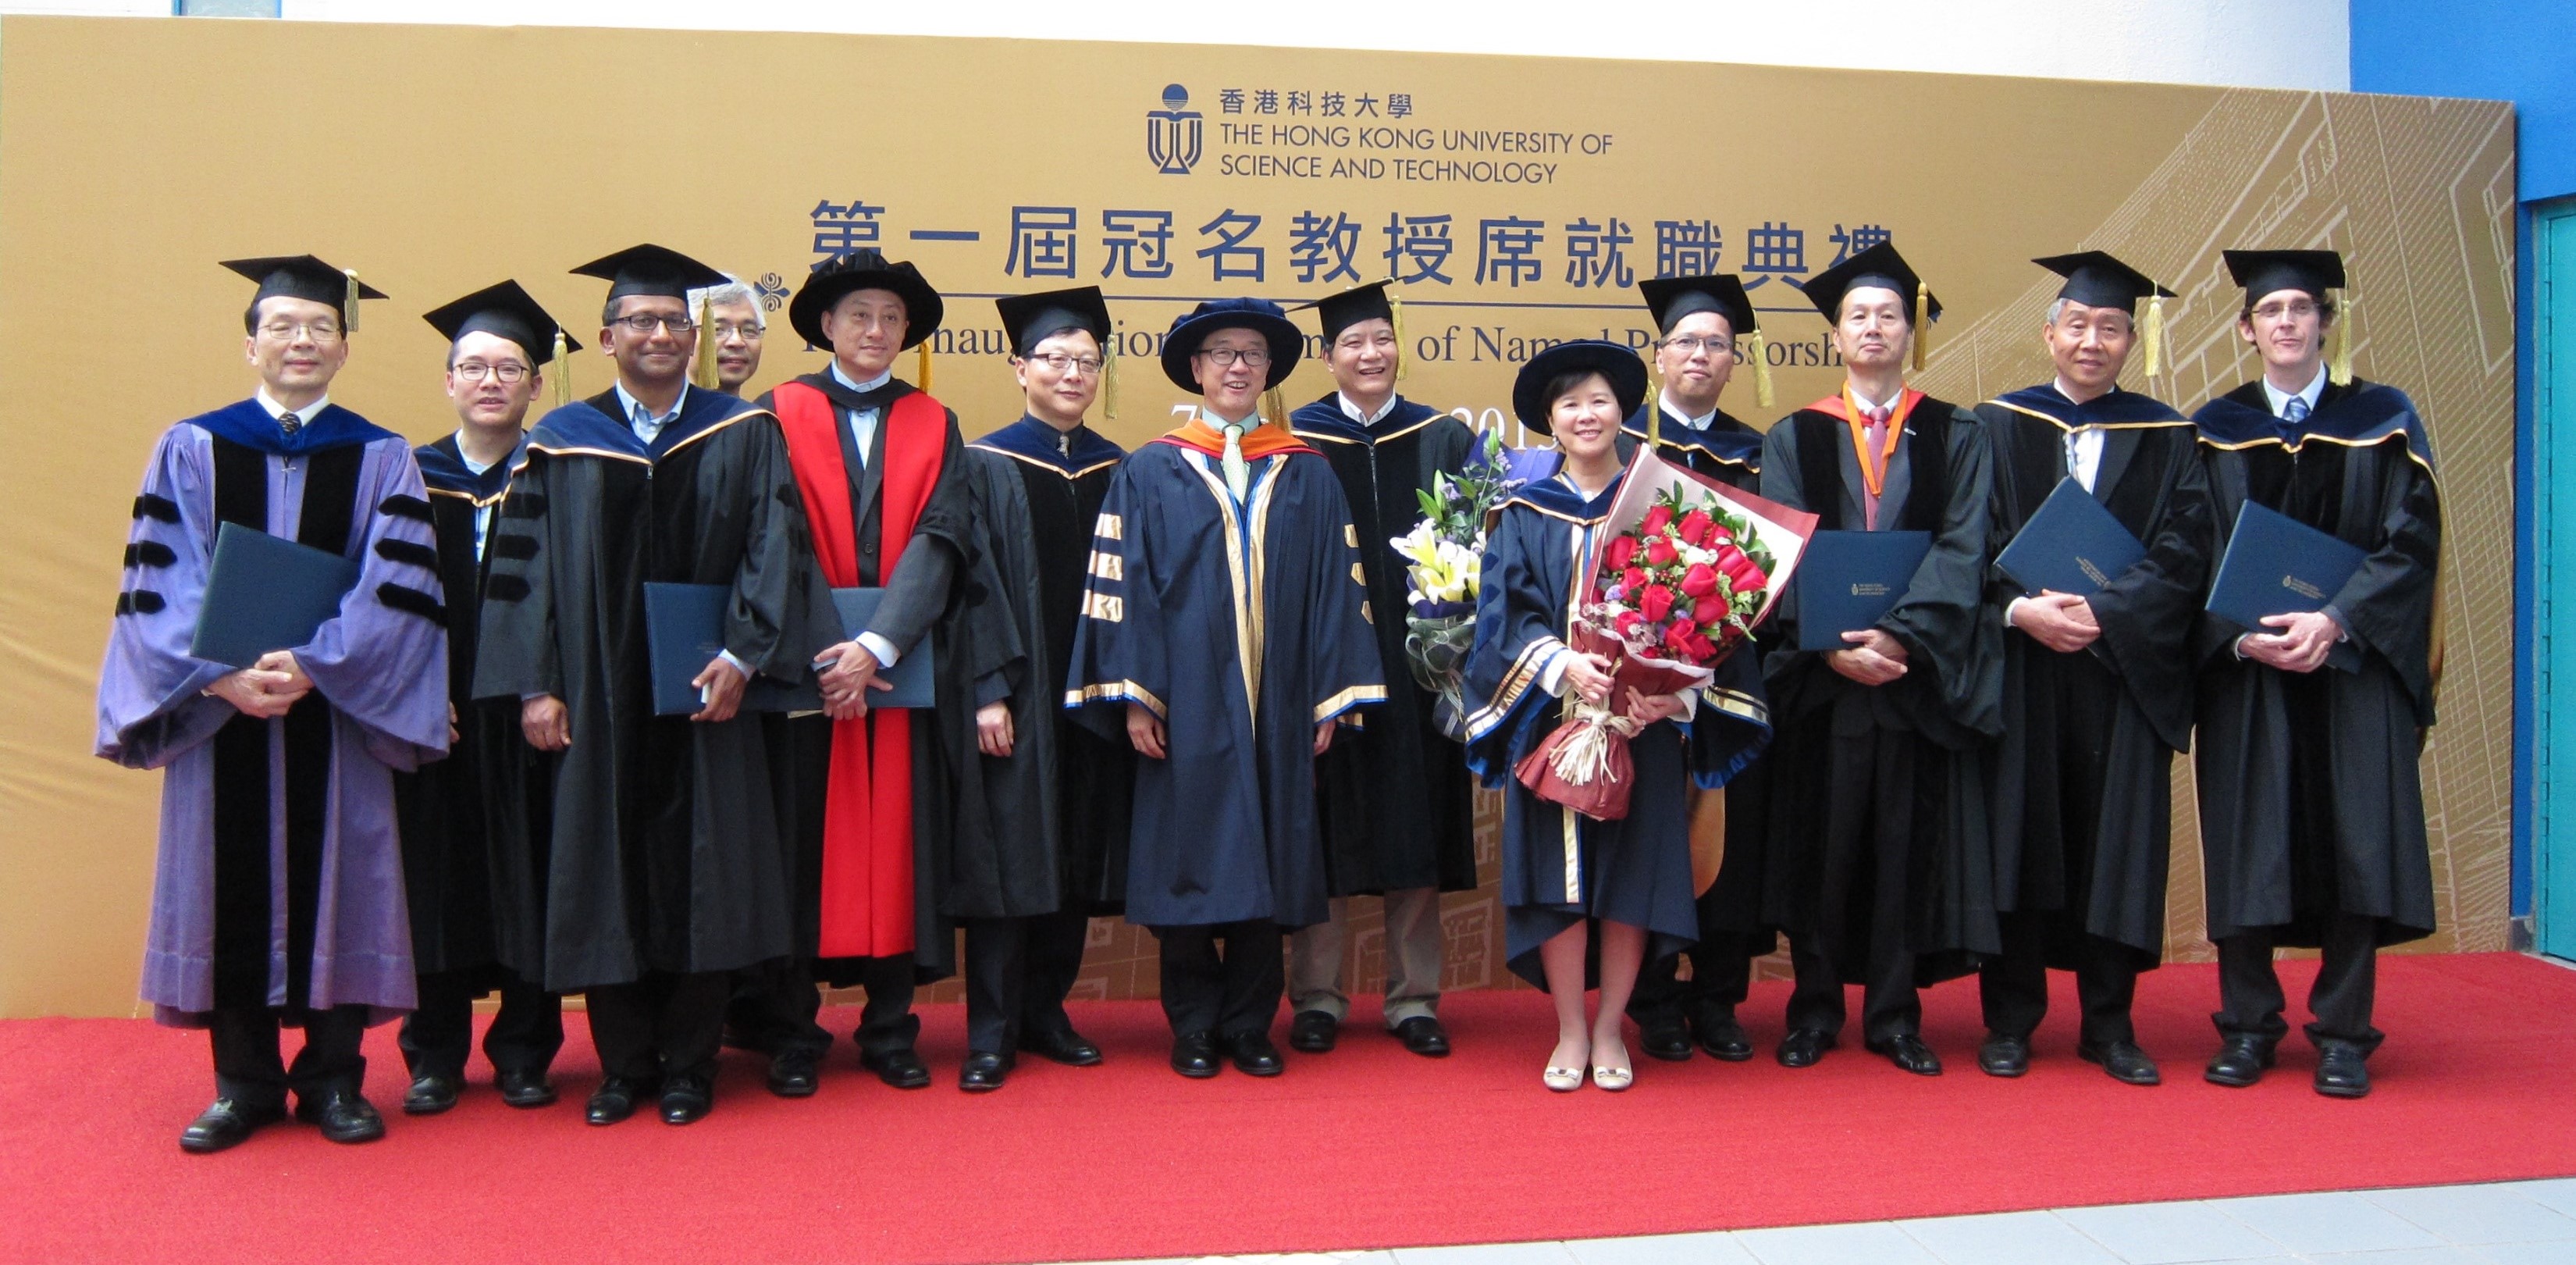 叶教授(右五)於2013年科大首届冠名教授席就职典礼获颁晨兴生命科学教授。